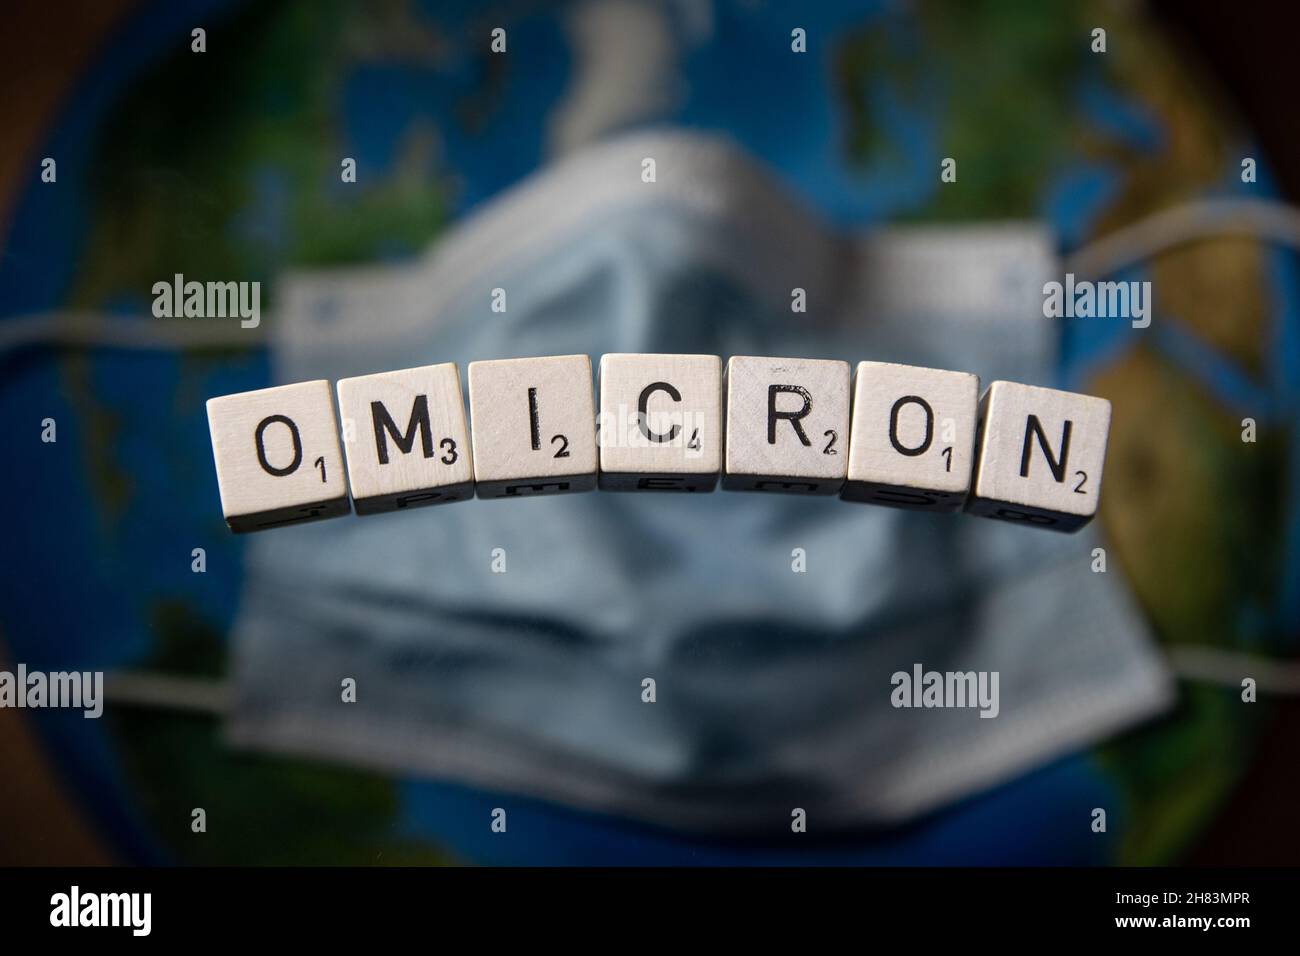 Omicron Letters che ha scritto Omicron, il nome che L'OMS ha dato a una nuova variante di paesi del Covid-19 in tutto il mondo, sta introducendo nuovi viaggi Foto Stock